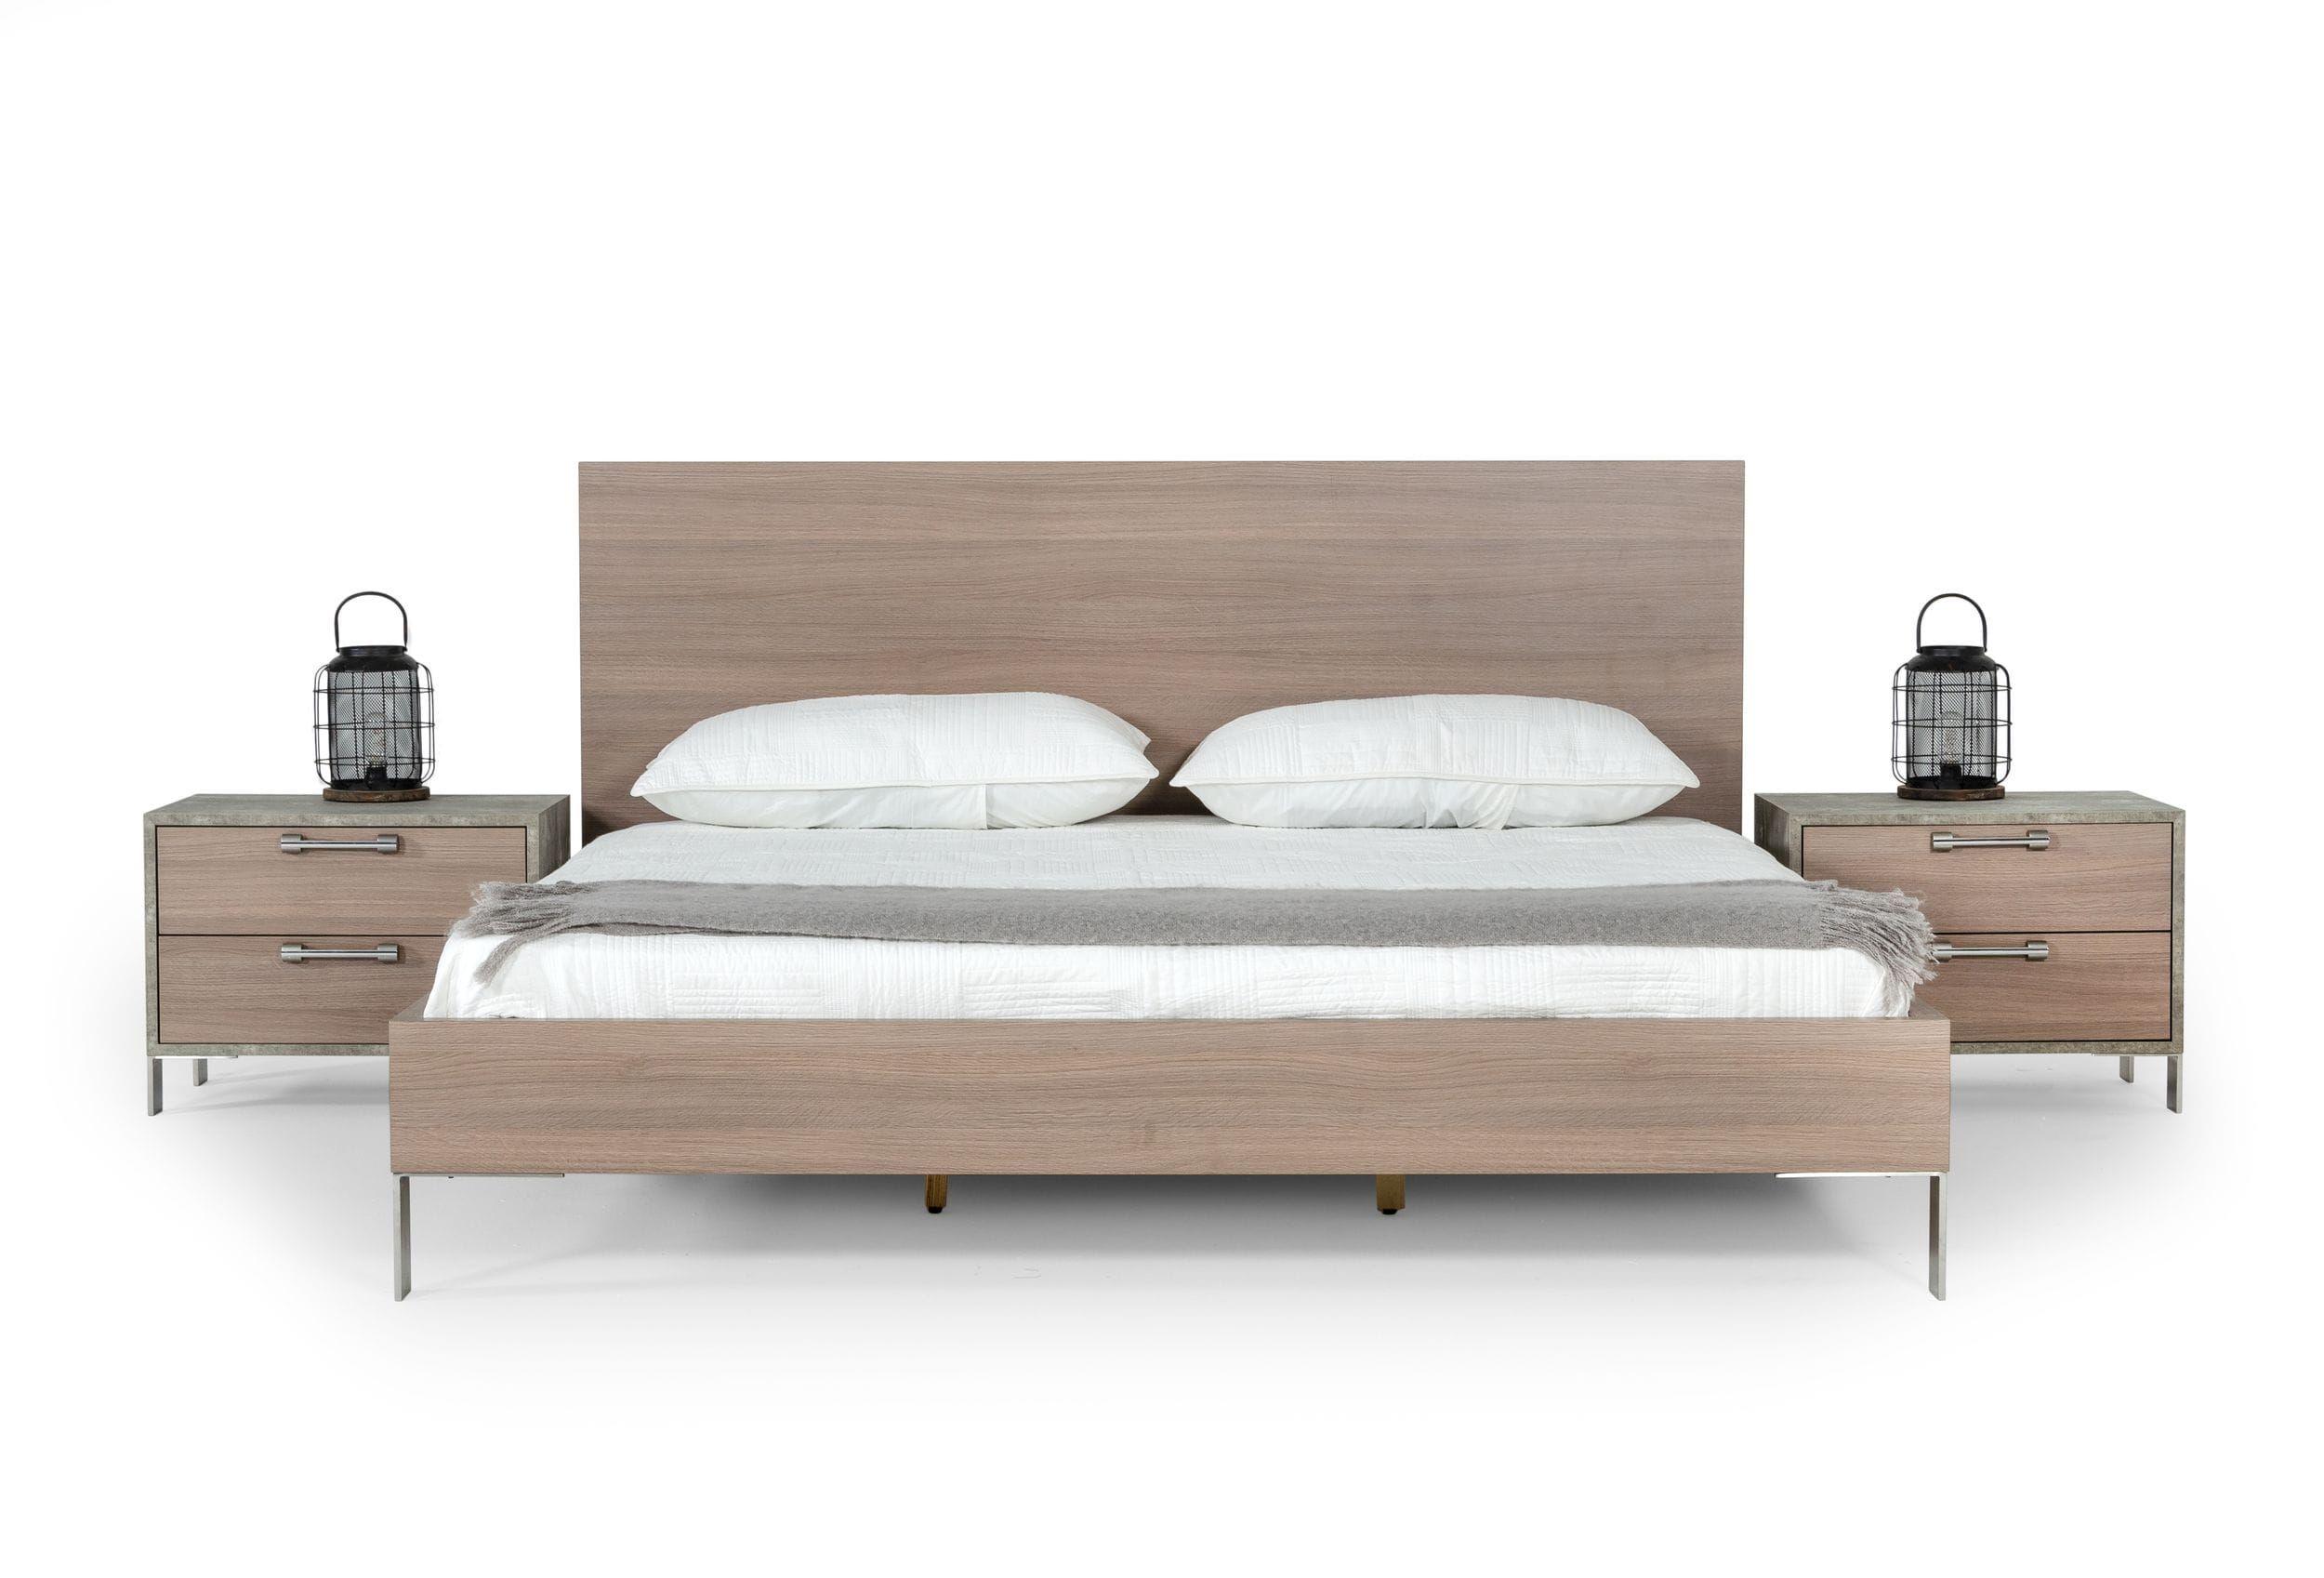 

    
Light Oak & Brushed Stainless Steel Queen Panel Bedroom Set 3Pcs by VIG Nova Domus Boston
